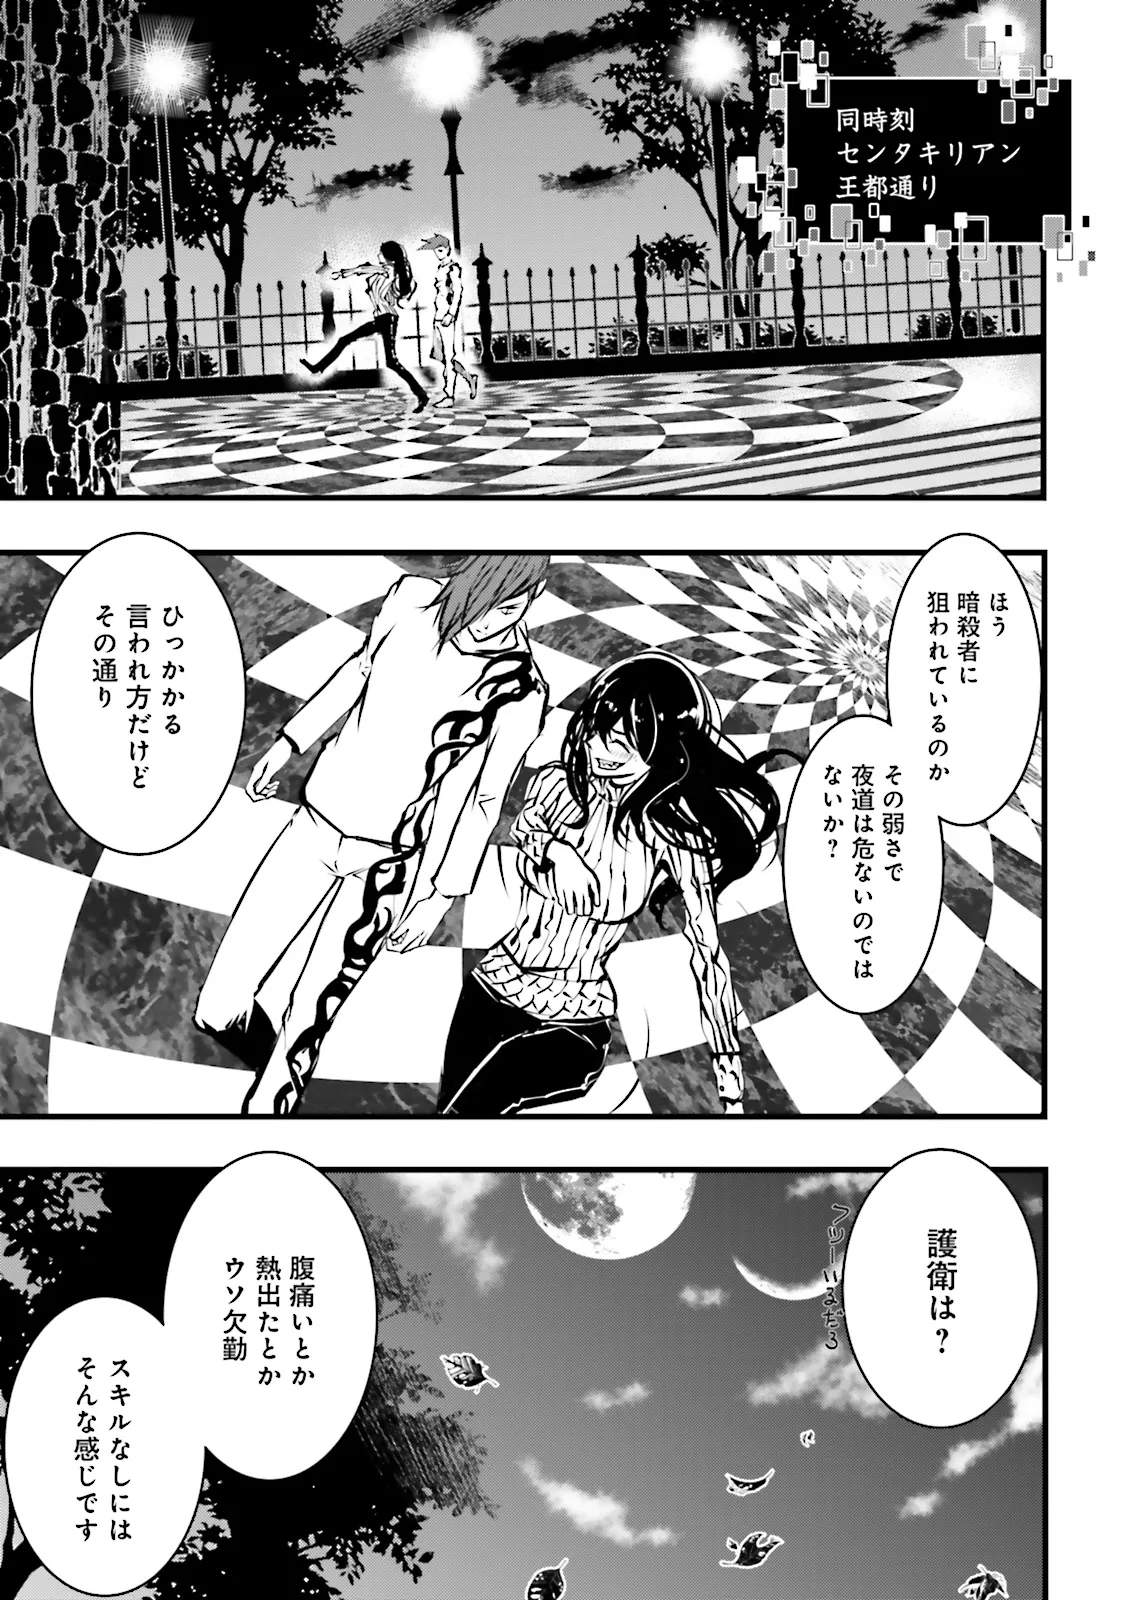 Sukiru Ga Nakereba Level wo Ageru ~ 99 Ga Kansuto No Sekai De Reberu 800 Man Kara Sutato ~ - Chapter 38.4 - Page 7